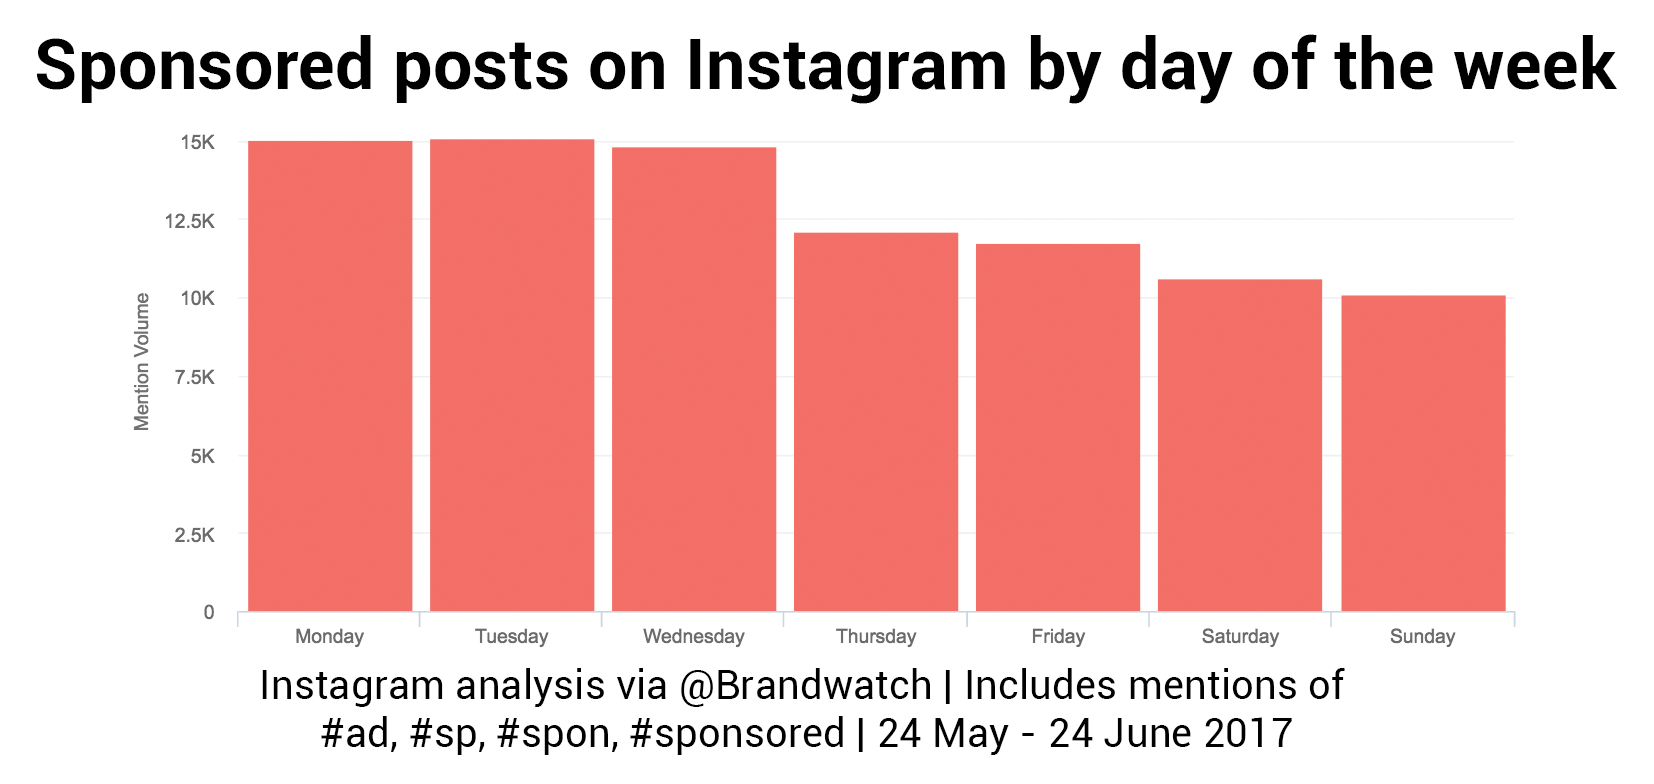 Anuncios en Instagram - por día de la semana